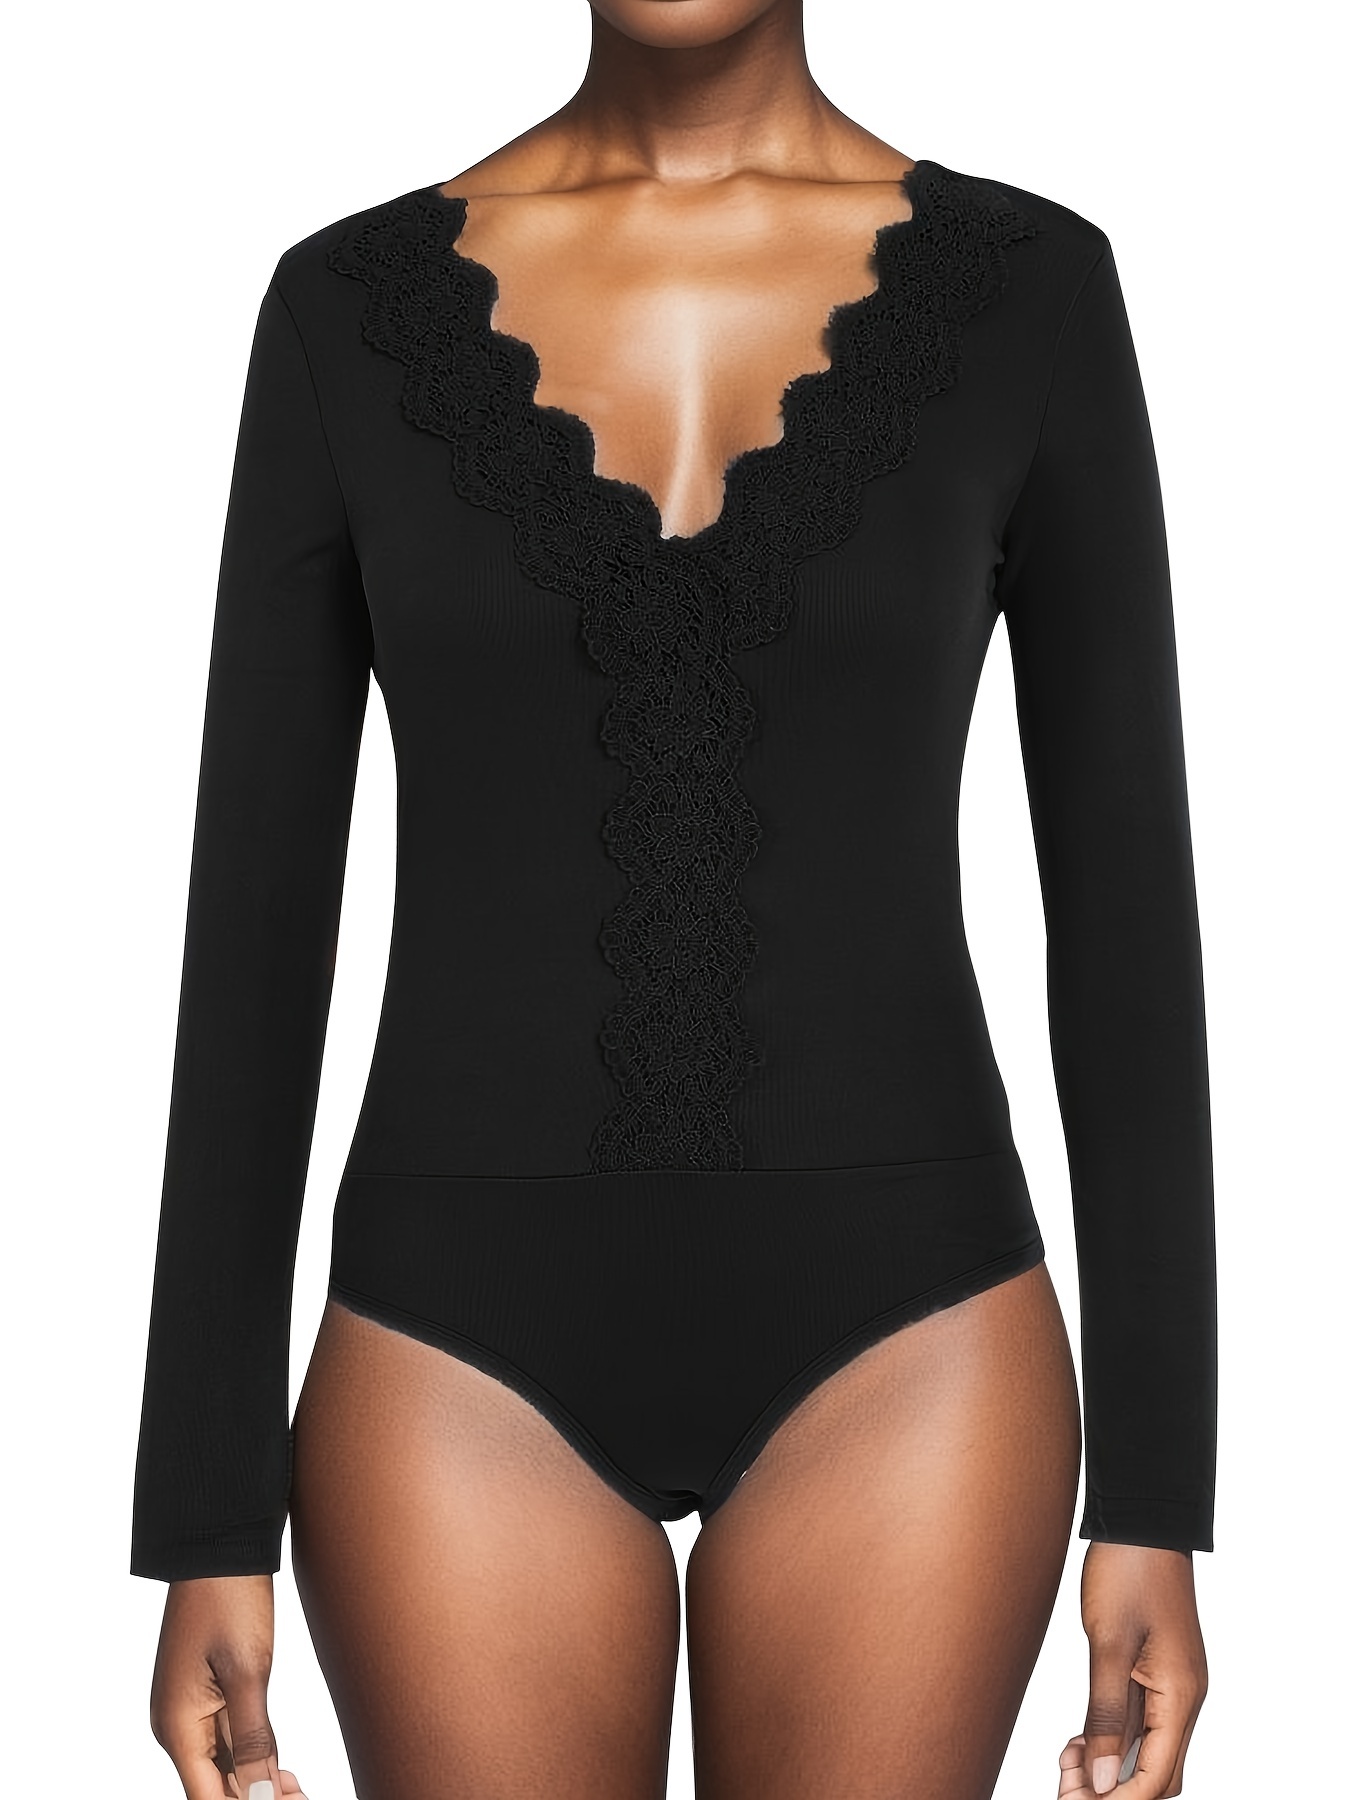 Douhoow Womens Black Lace Bodysuits Transparent Long Sleeve Deep V-neck  Jumpsuit